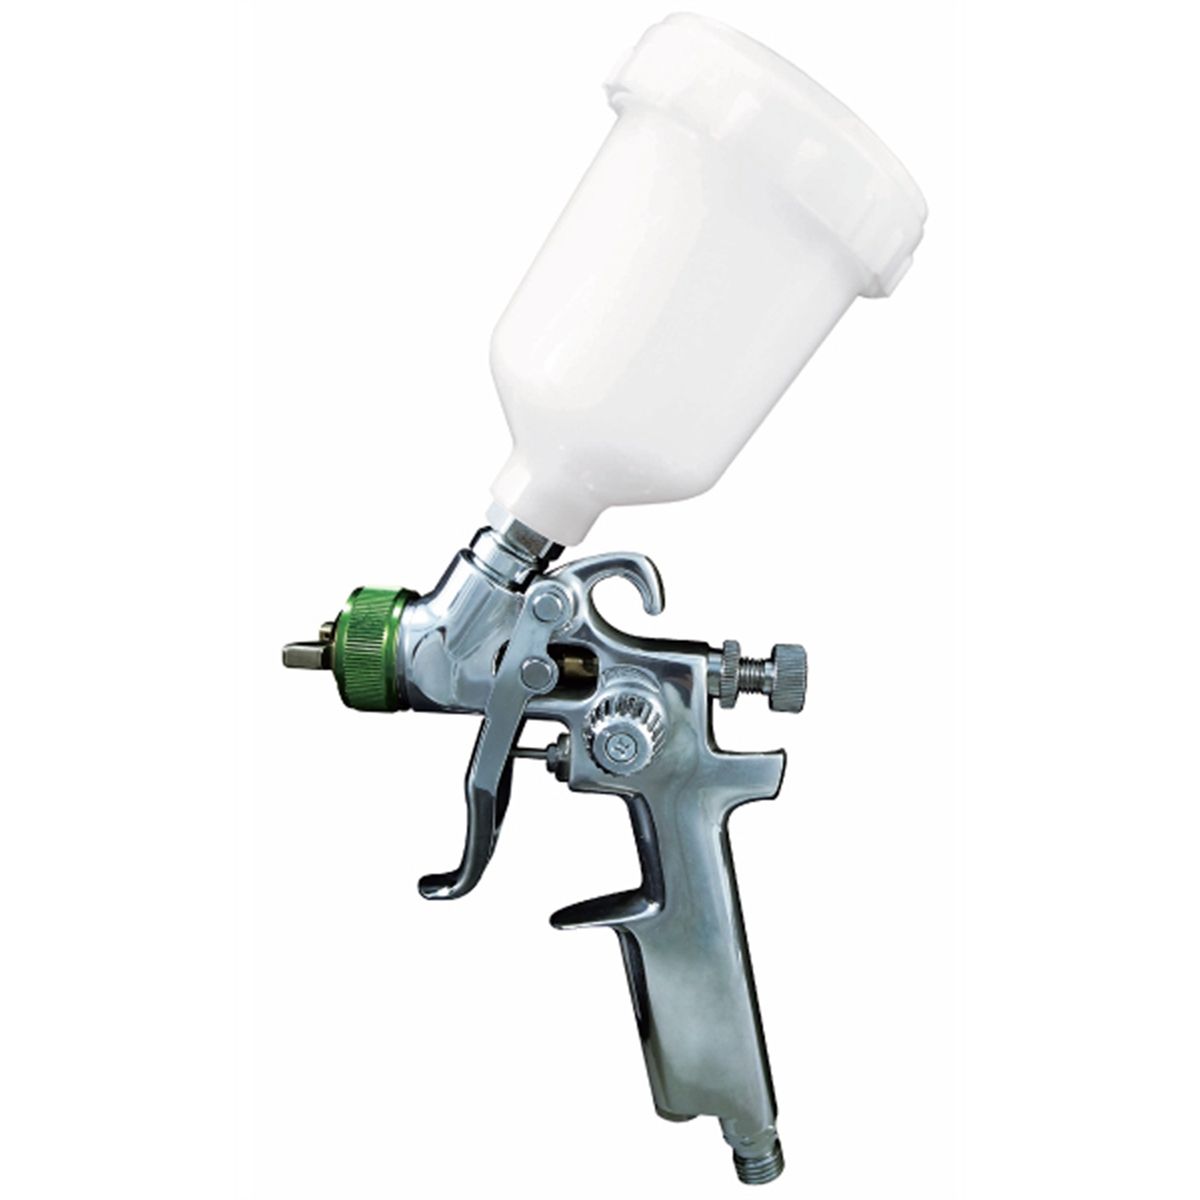 Mignon 4, HVLP/LVLP Manual Spray Gun, Small Size Spray Gun, Spray